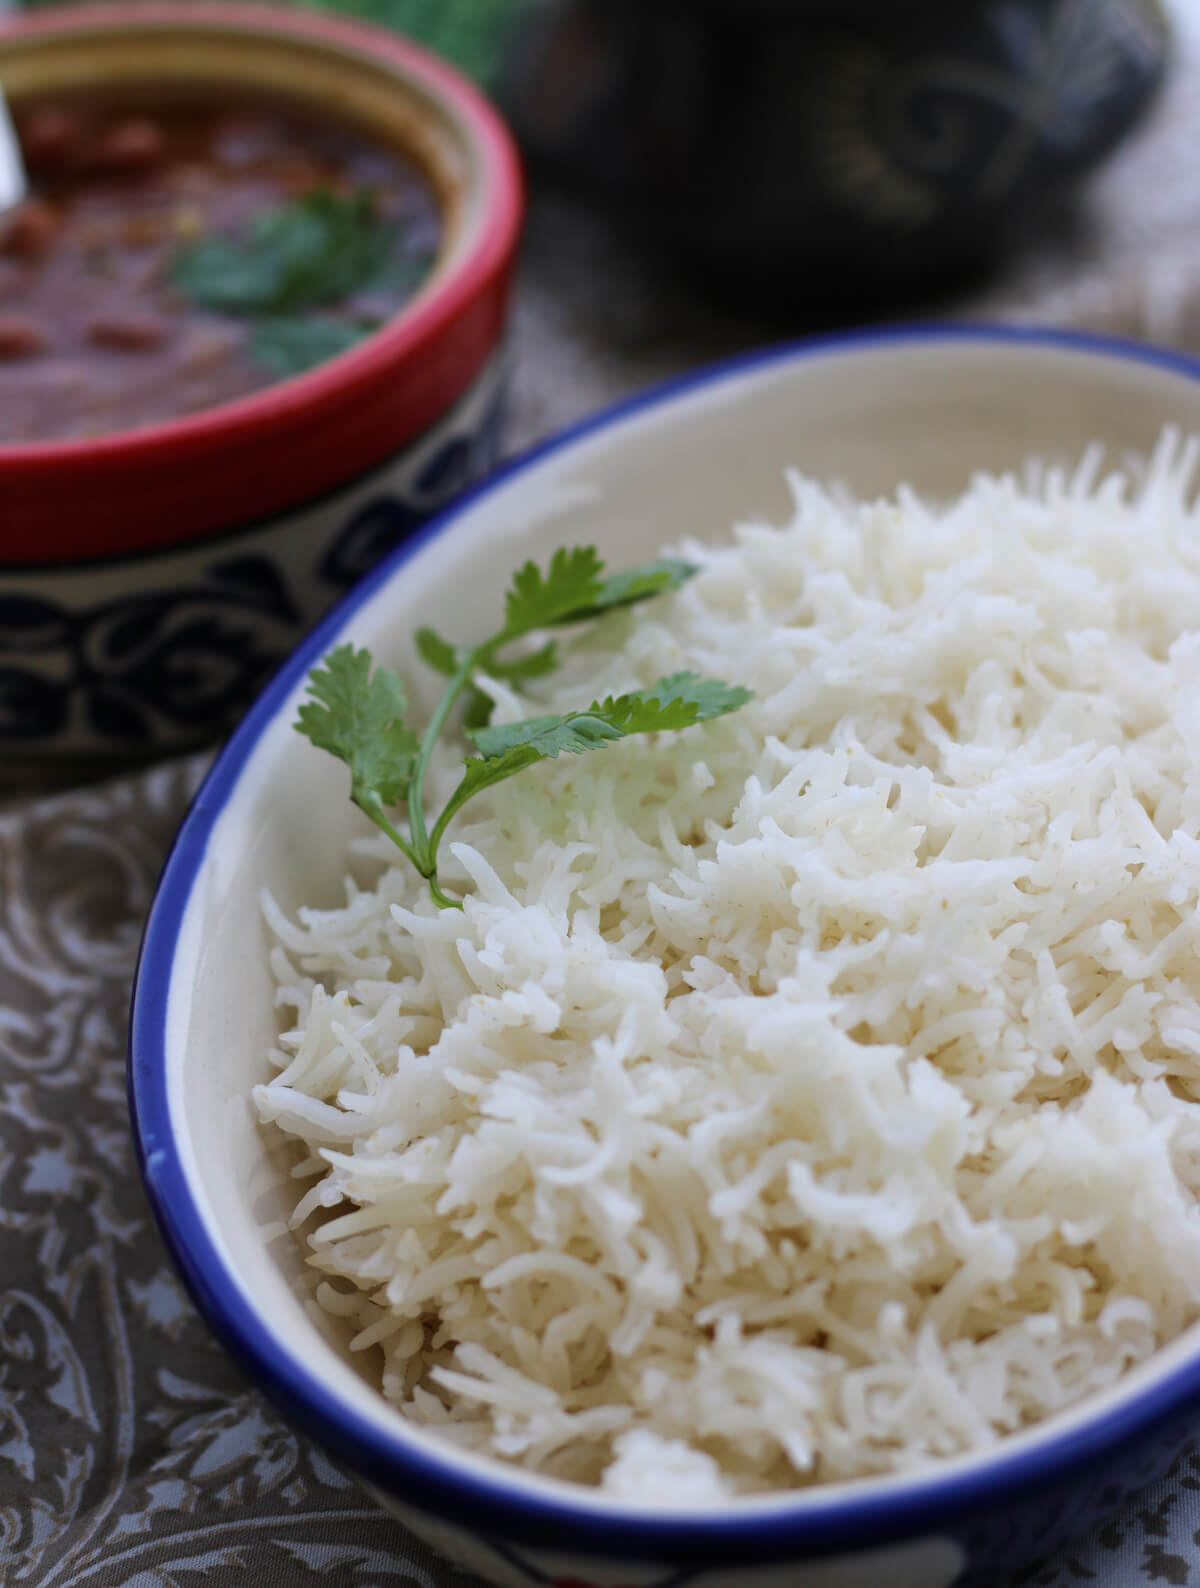 https://www.myweekendkitchen.in/make-perfect-basmati-rice/how-to-make-perfect-basmati-rice-recipe/